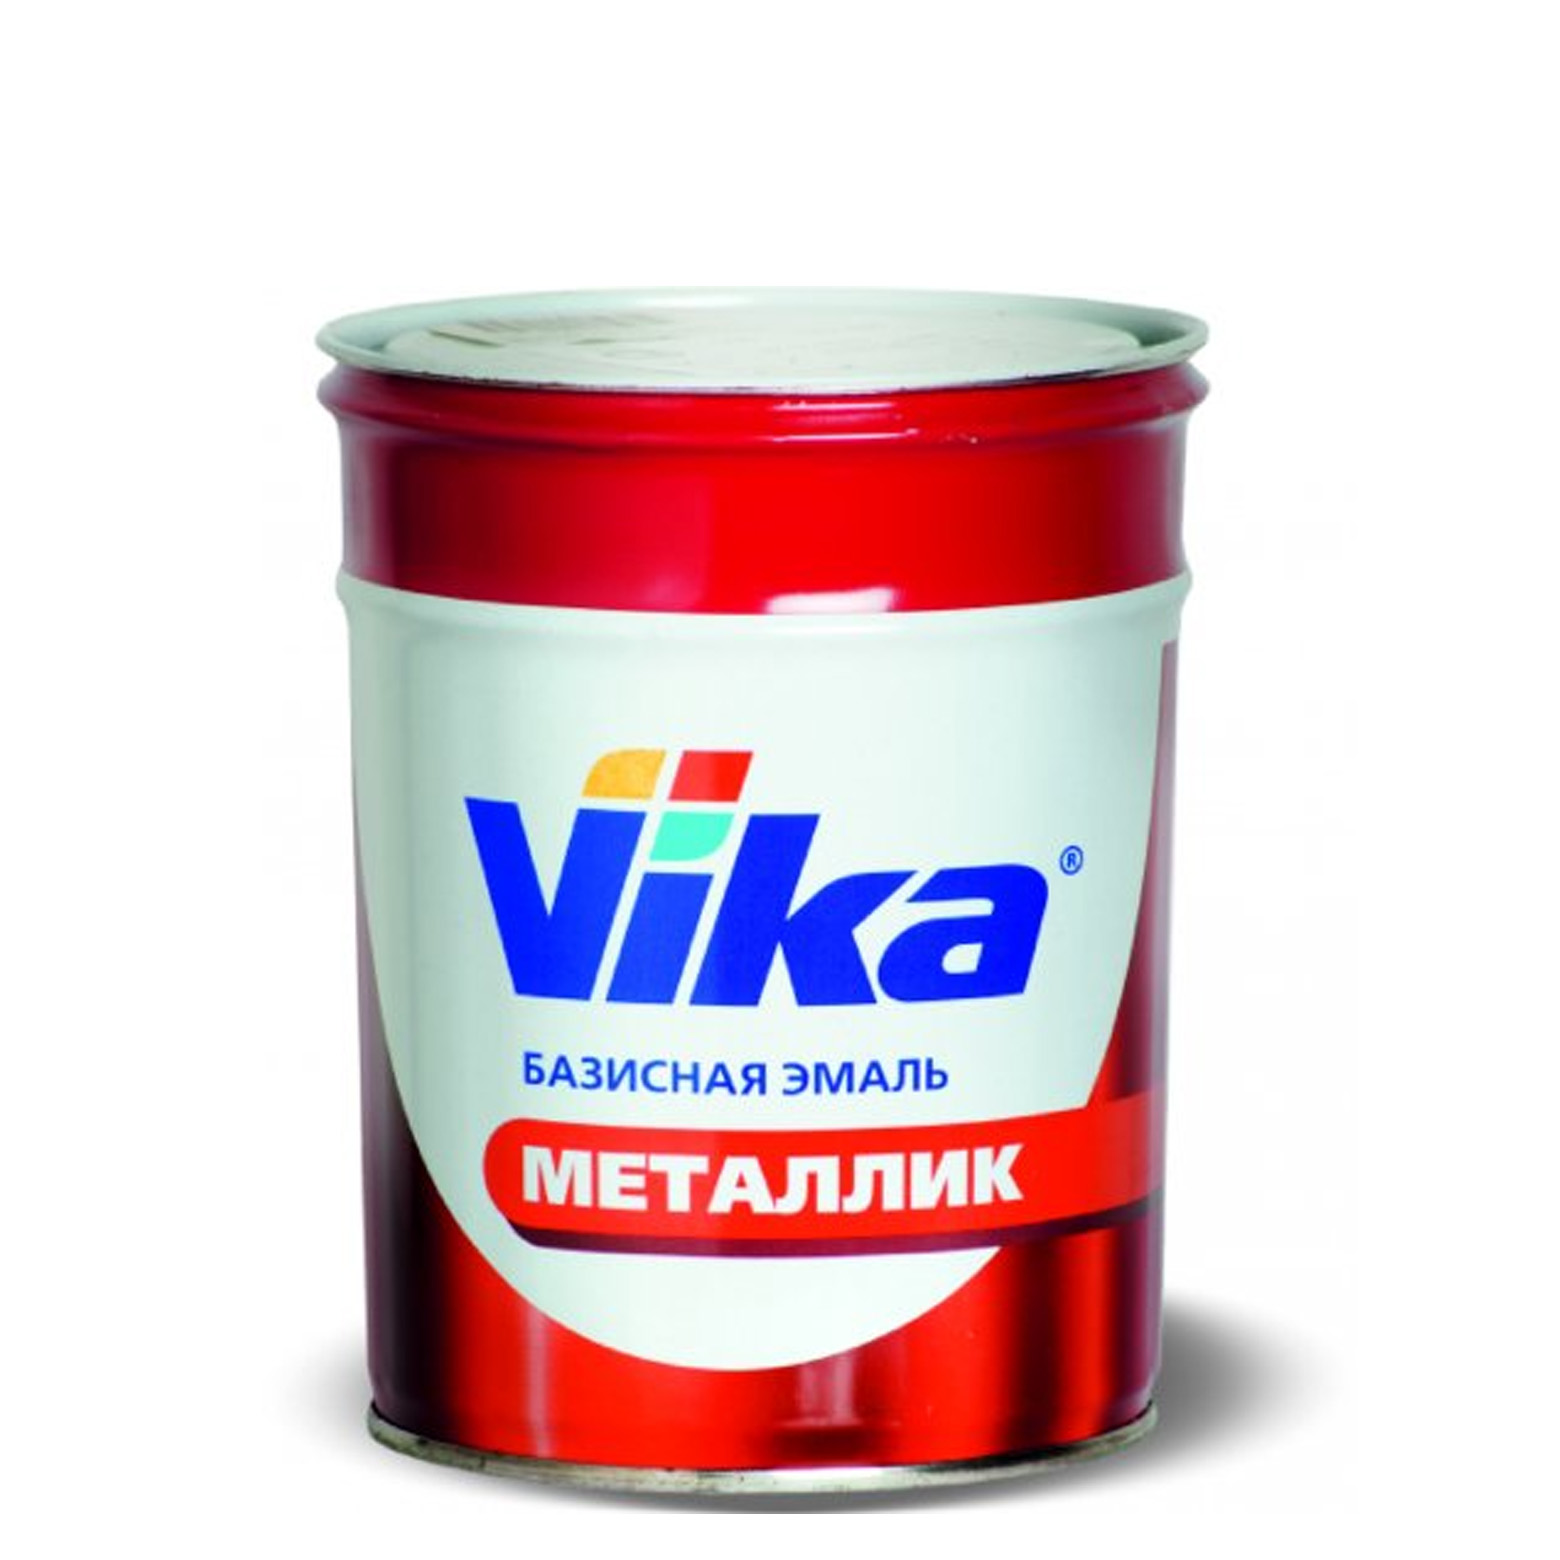 Фото 1 - Автоэмаль Металлик, цвет 606 Млечный путь, профессиональная базовая, - 0,9 кг Vika/Вика.